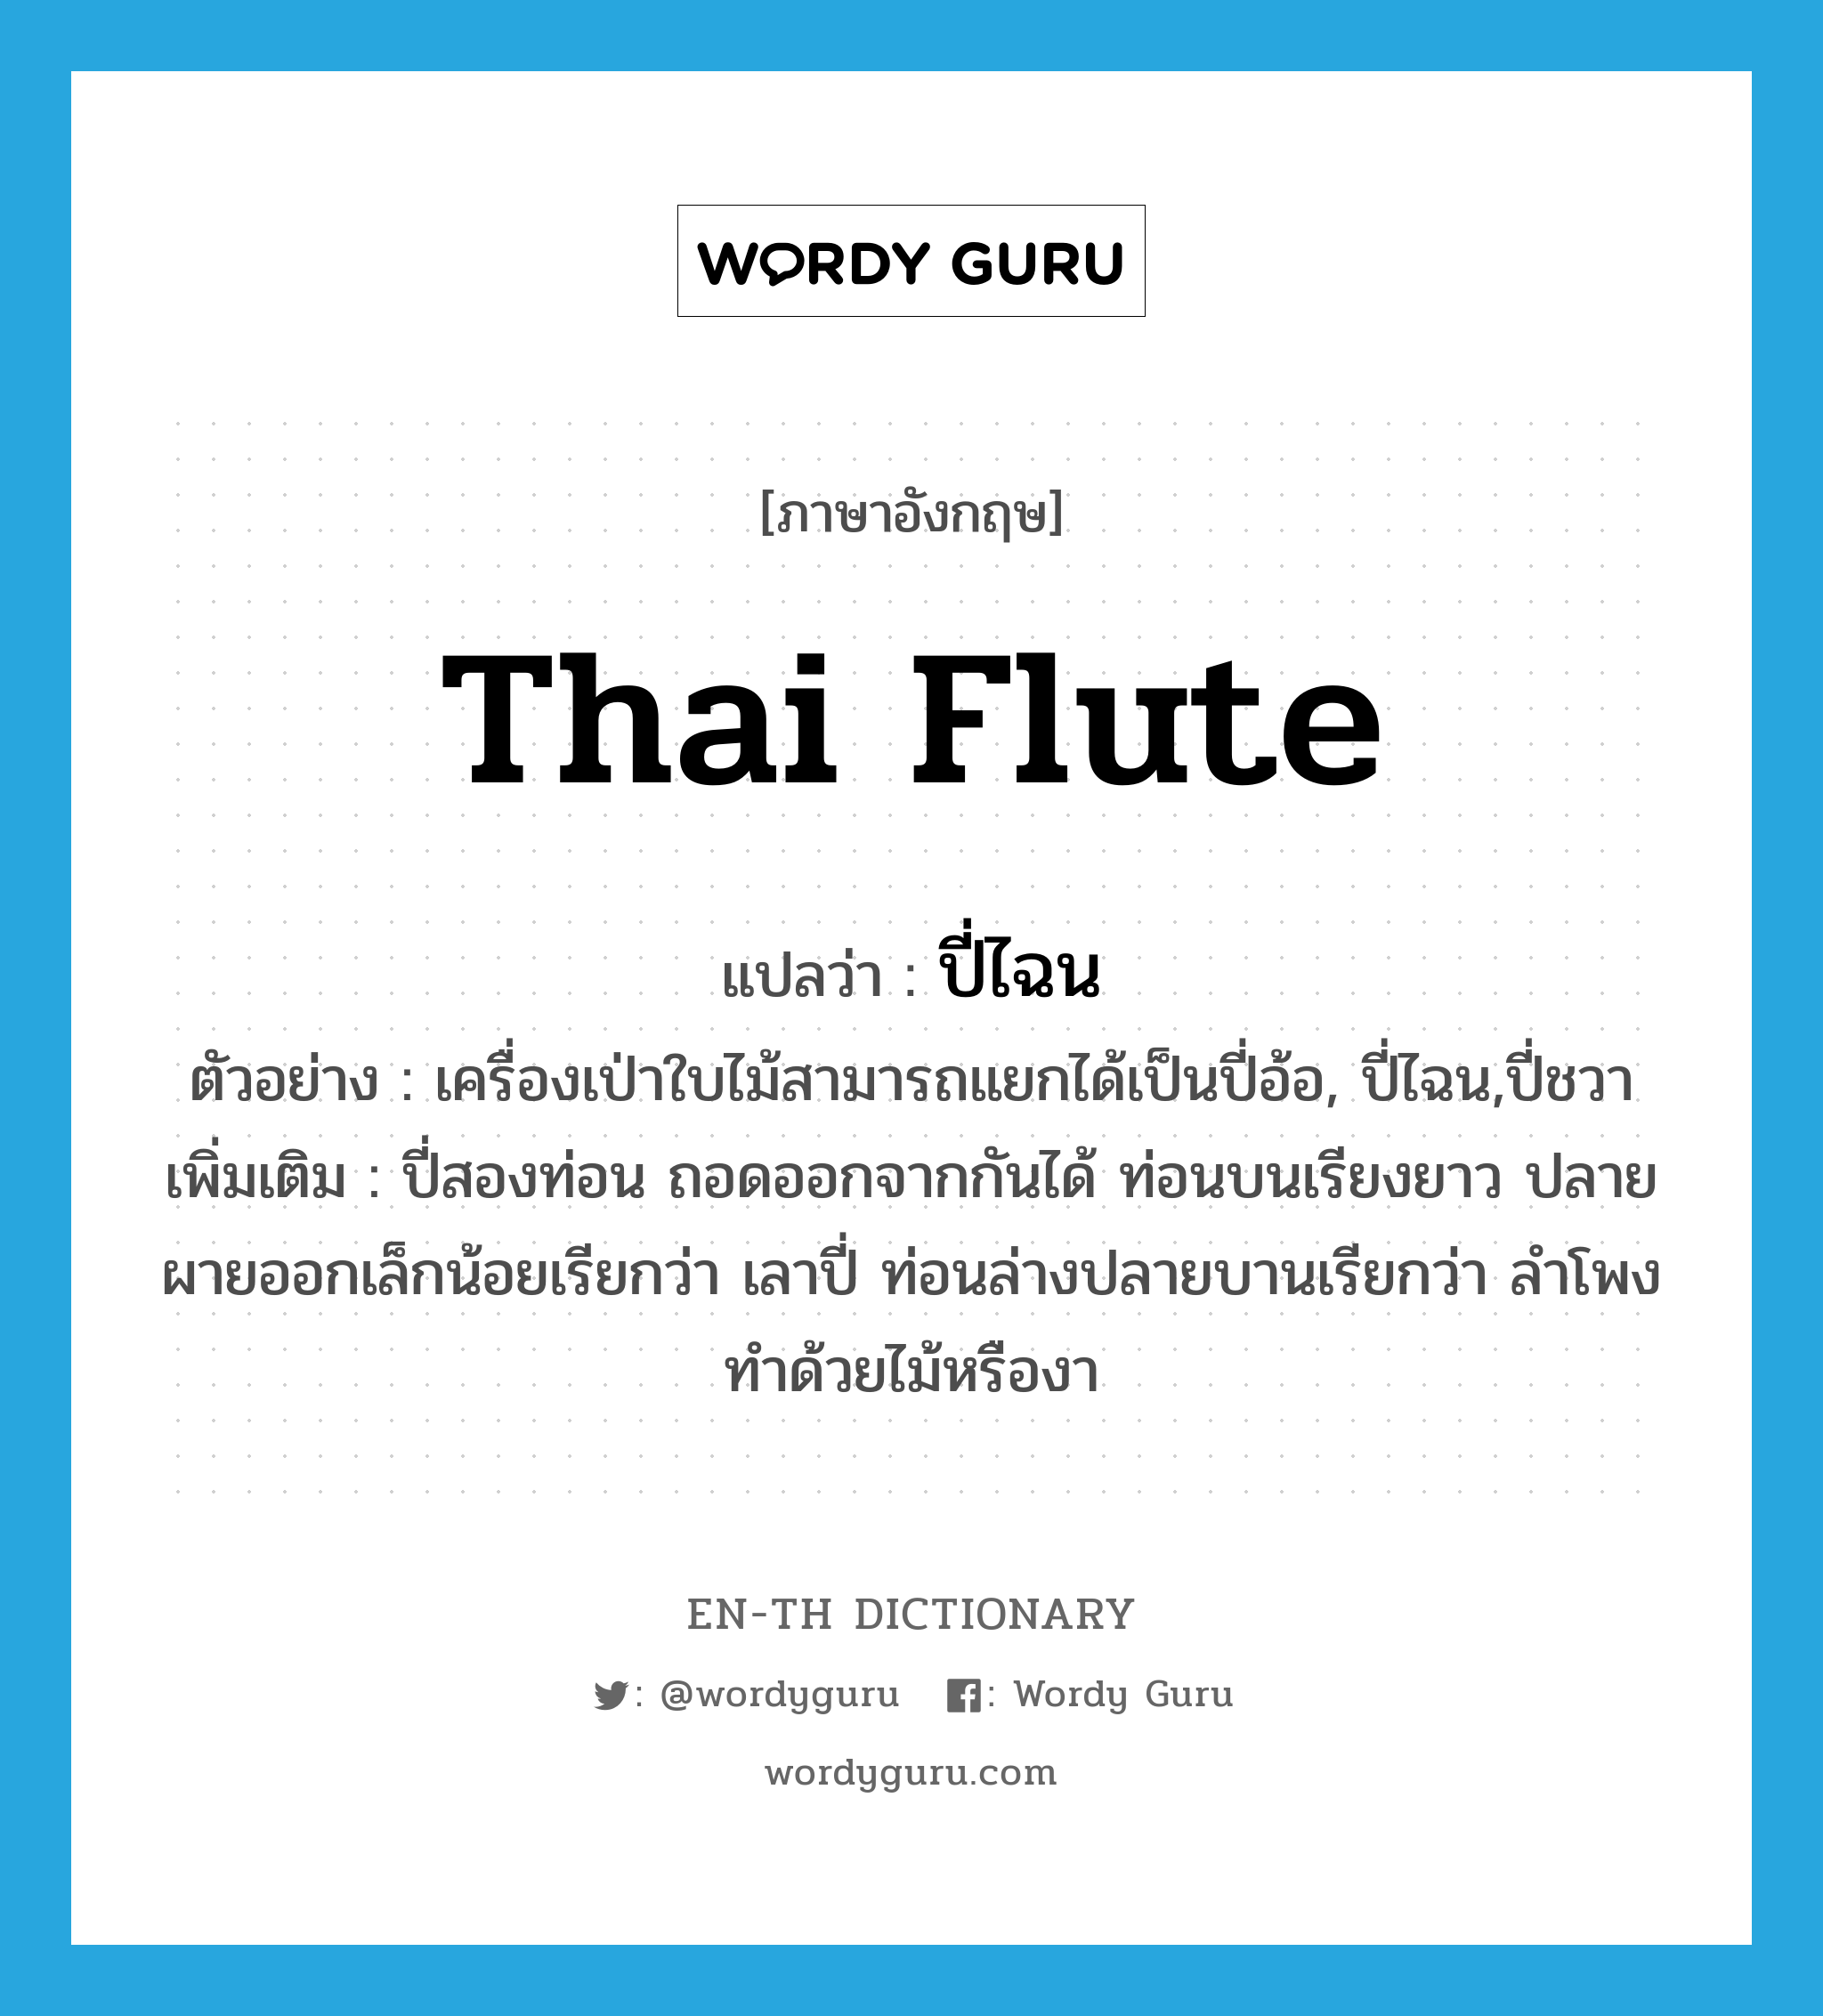 ปี่ไฉน ภาษาอังกฤษ?, คำศัพท์ภาษาอังกฤษ ปี่ไฉน แปลว่า Thai flute ประเภท N ตัวอย่าง เครื่องเป่าใบไม้สามารถแยกได้เป็นปี่อ้อ, ปี่ไฉน,ปี่ชวา เพิ่มเติม ปี่สองท่อน ถอดออกจากกันได้ ท่อนบนเรียงยาว ปลายผายออกเล็กน้อยเรียกว่า เลาปี่ ท่อนล่างปลายบานเรียกว่า ลำโพง ทำด้วยไม้หรืองา หมวด N